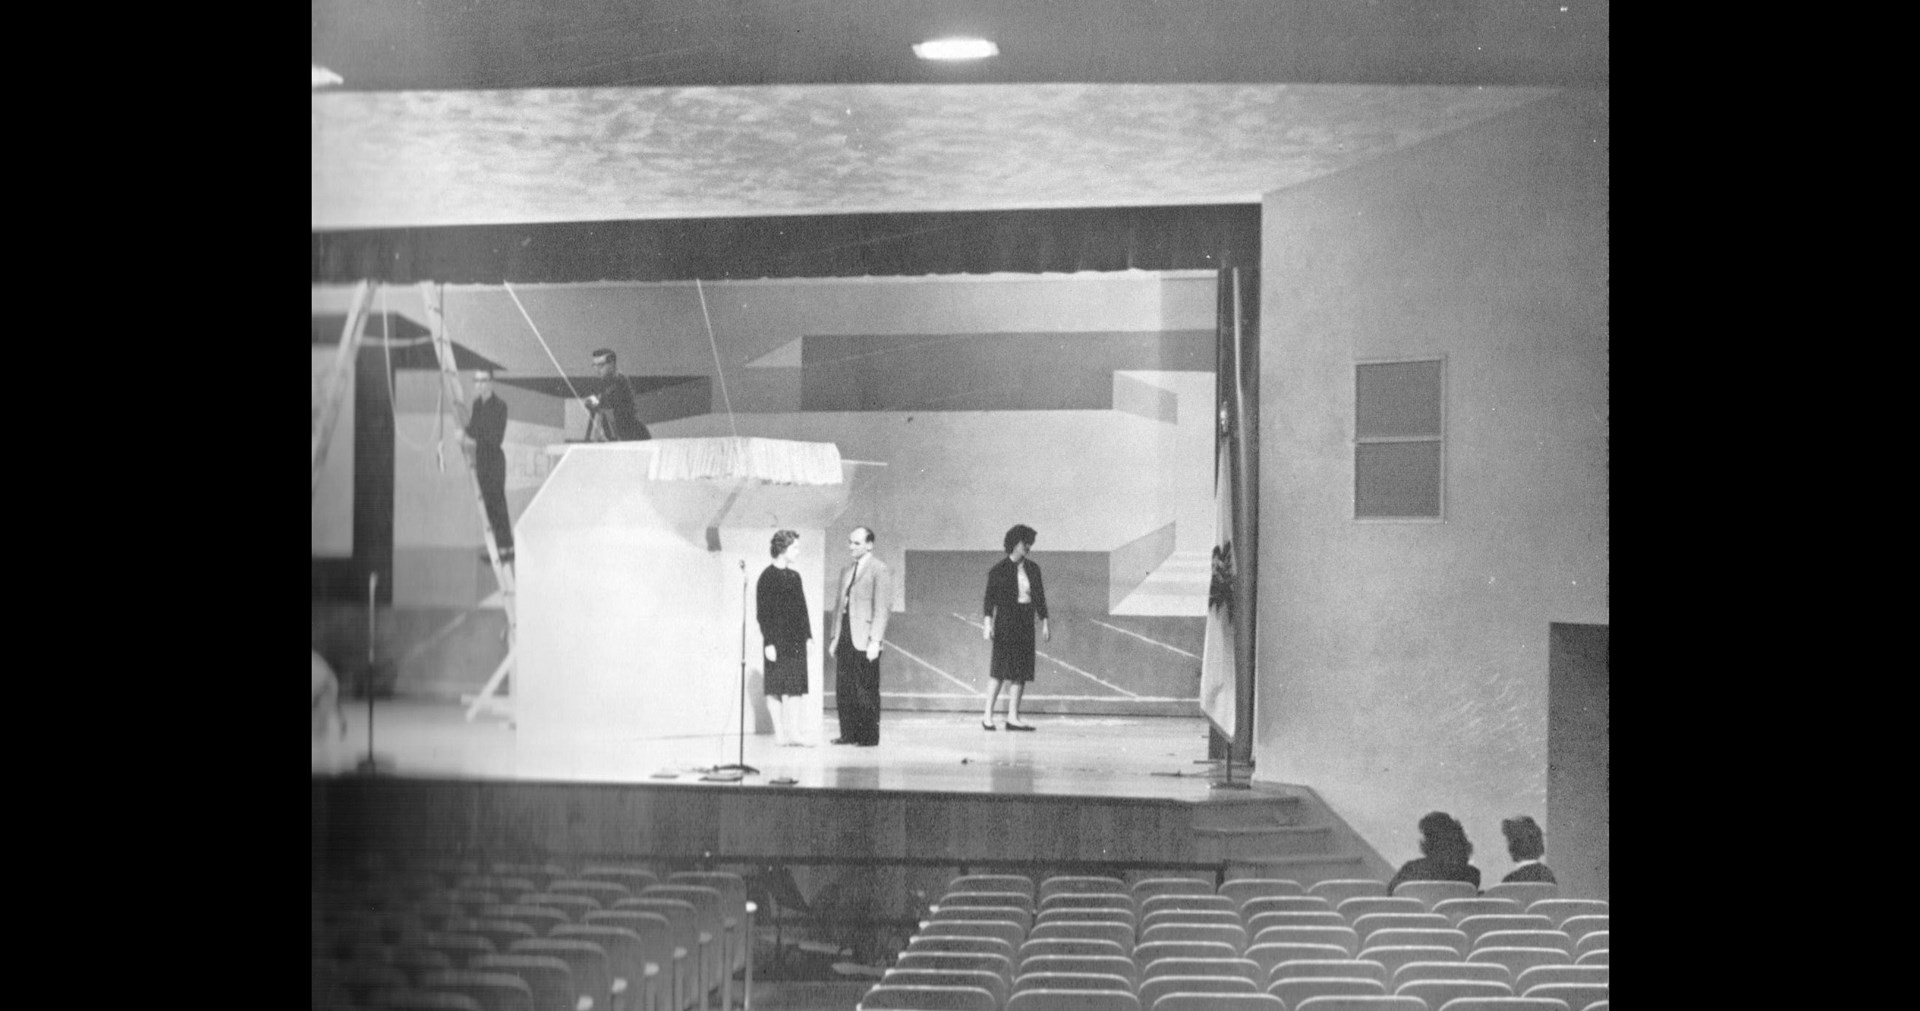 The MHS auditorium in 1962